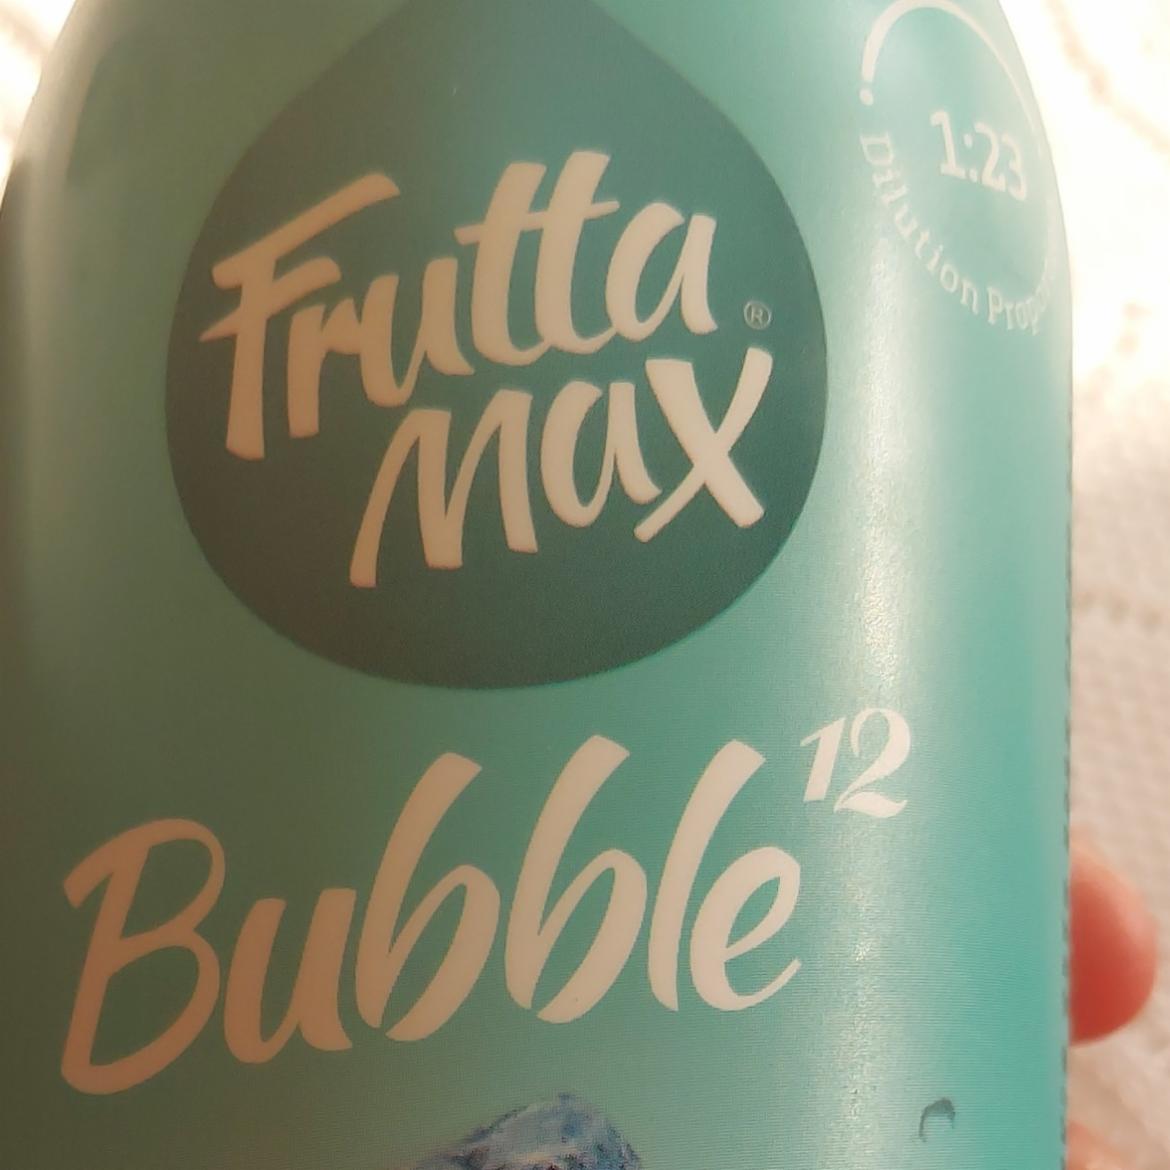 Képek - FruttaMax Bubble¹² tonic ízű szörp izocukorral és édesítőszerekkel 500 ml